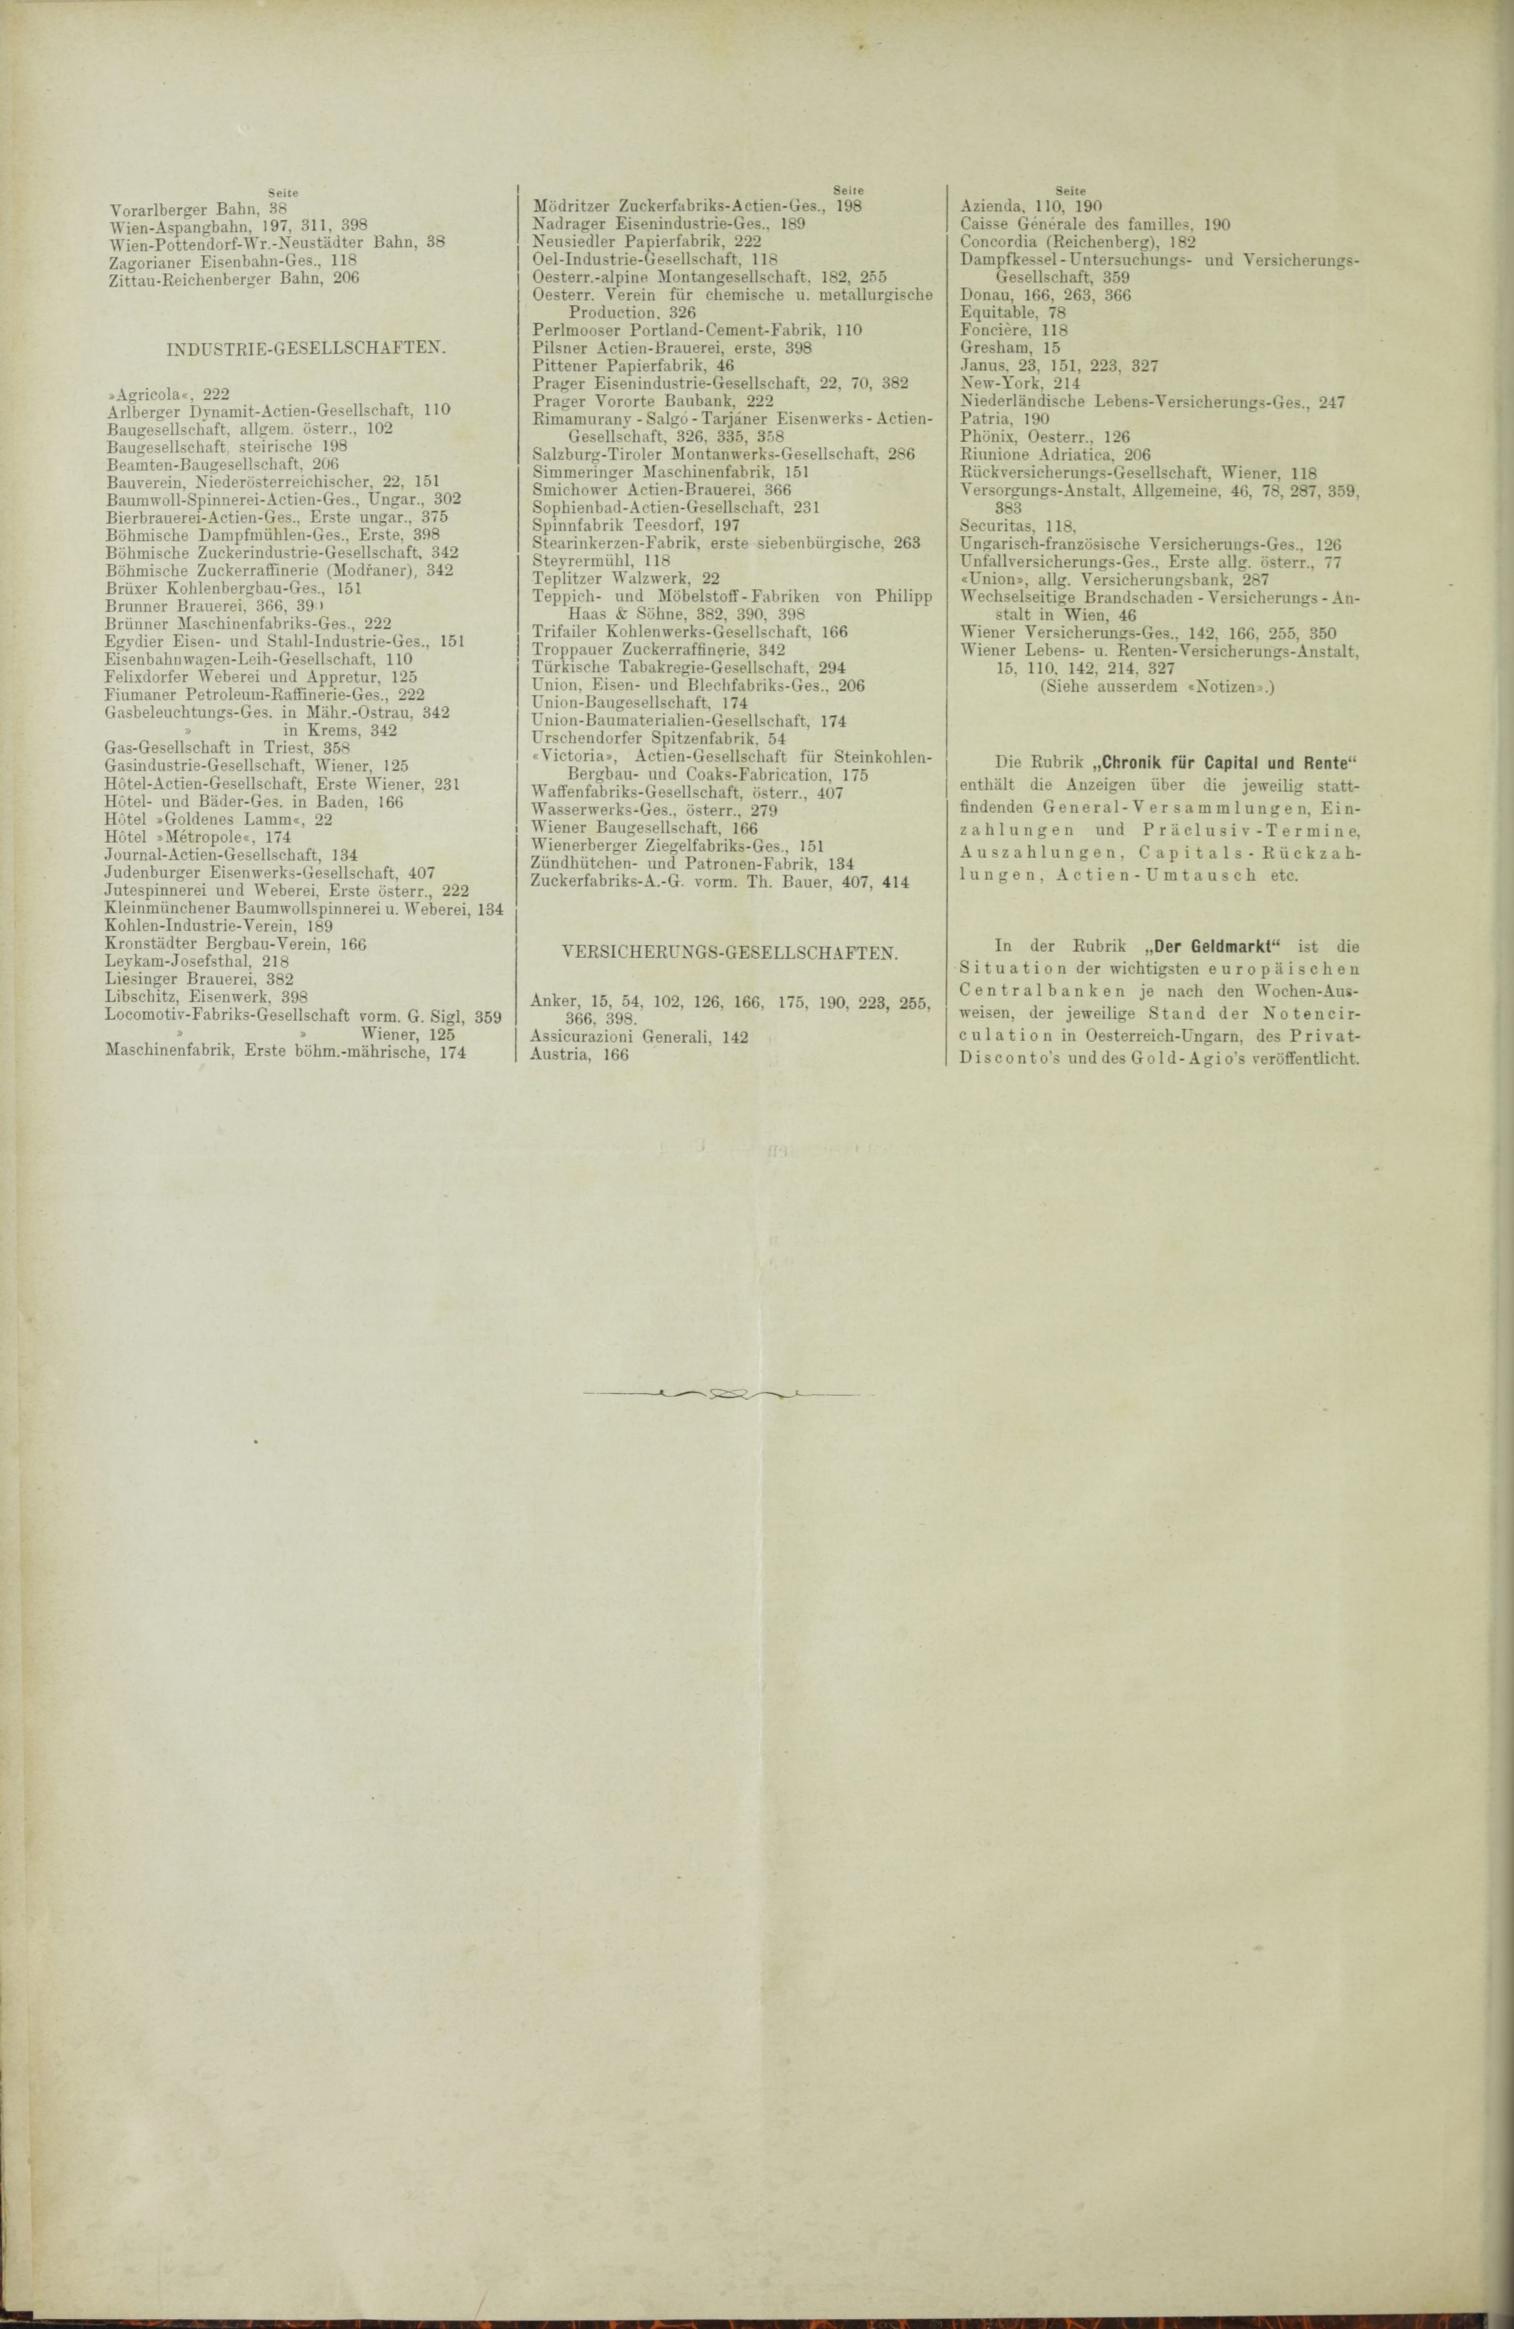 Der Tresor 02.12.1886 - Seite 12